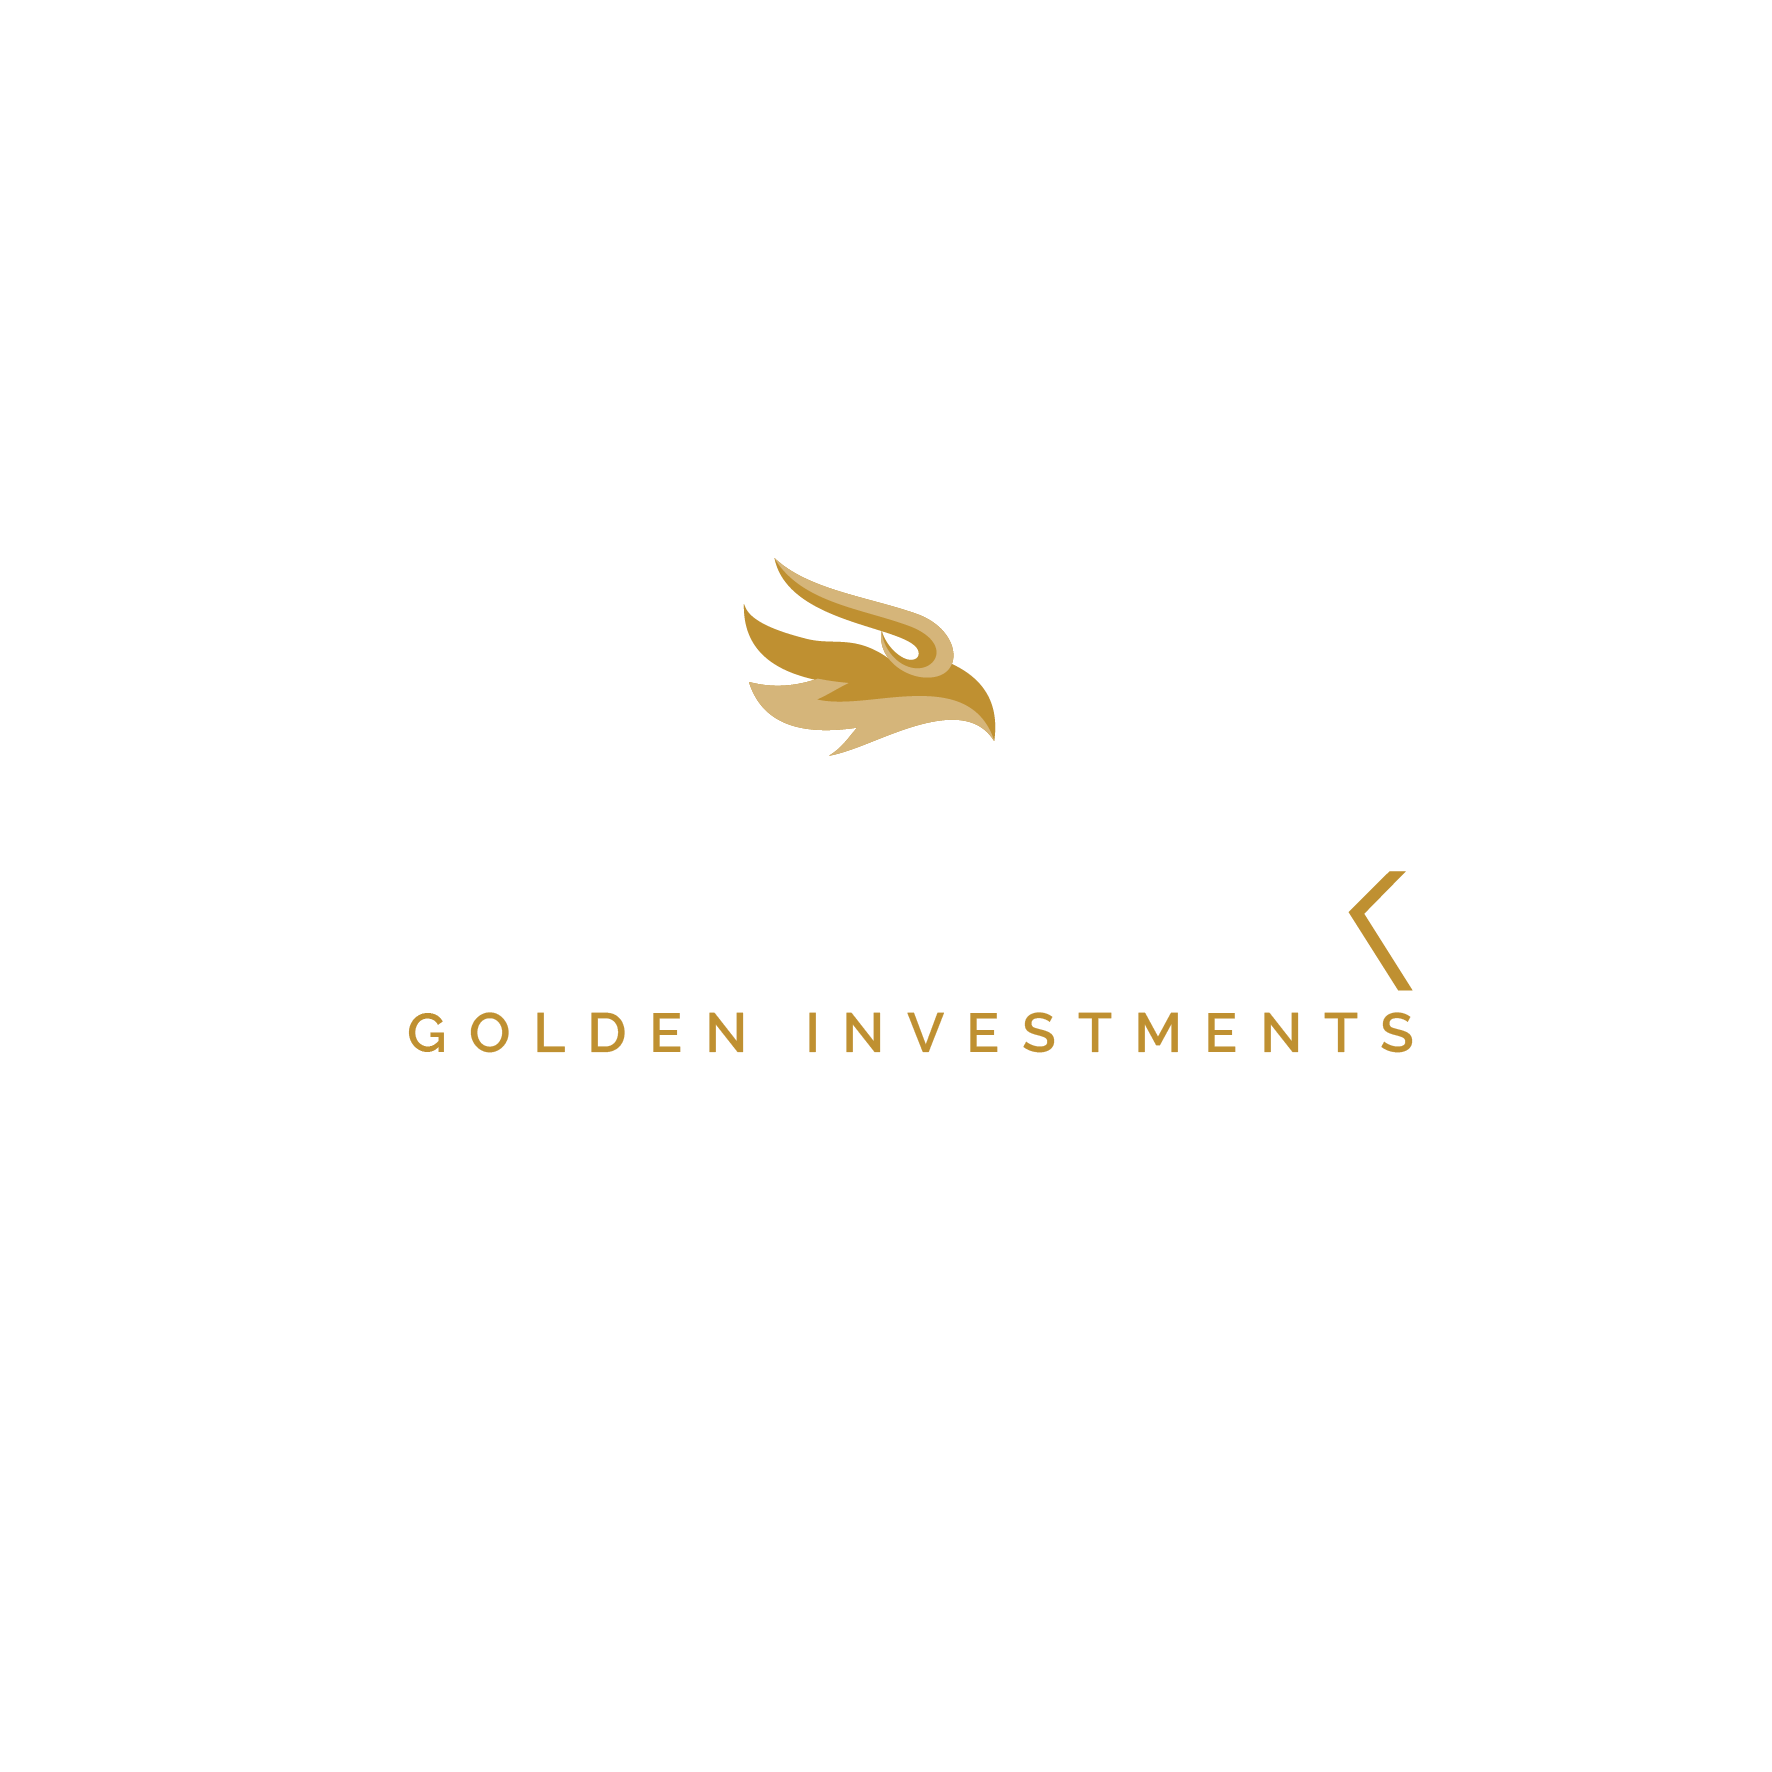 Fenix Golden